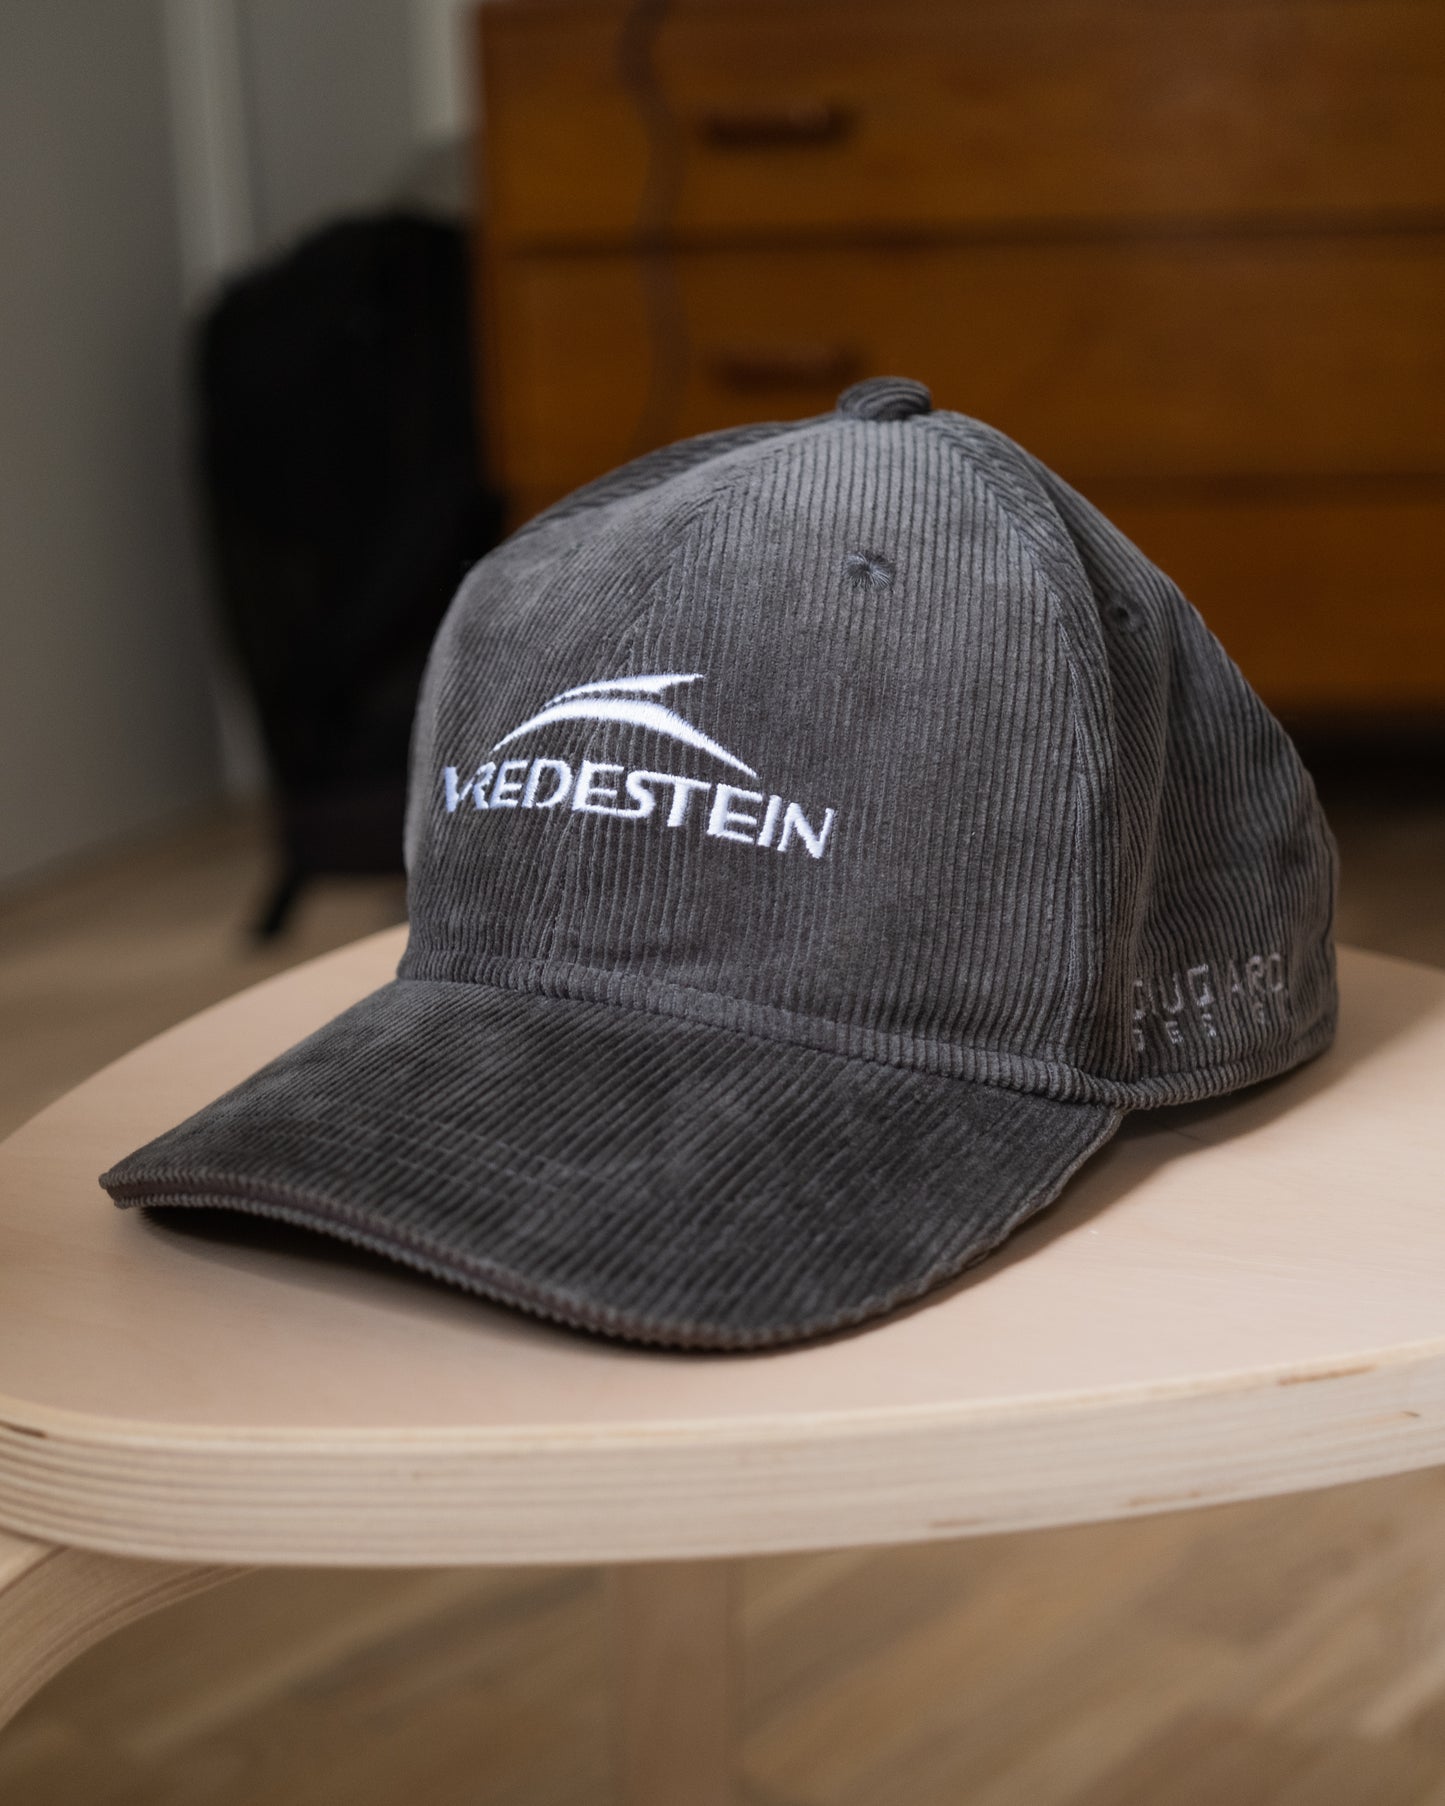 Vredestein Giugiaro Design Hat